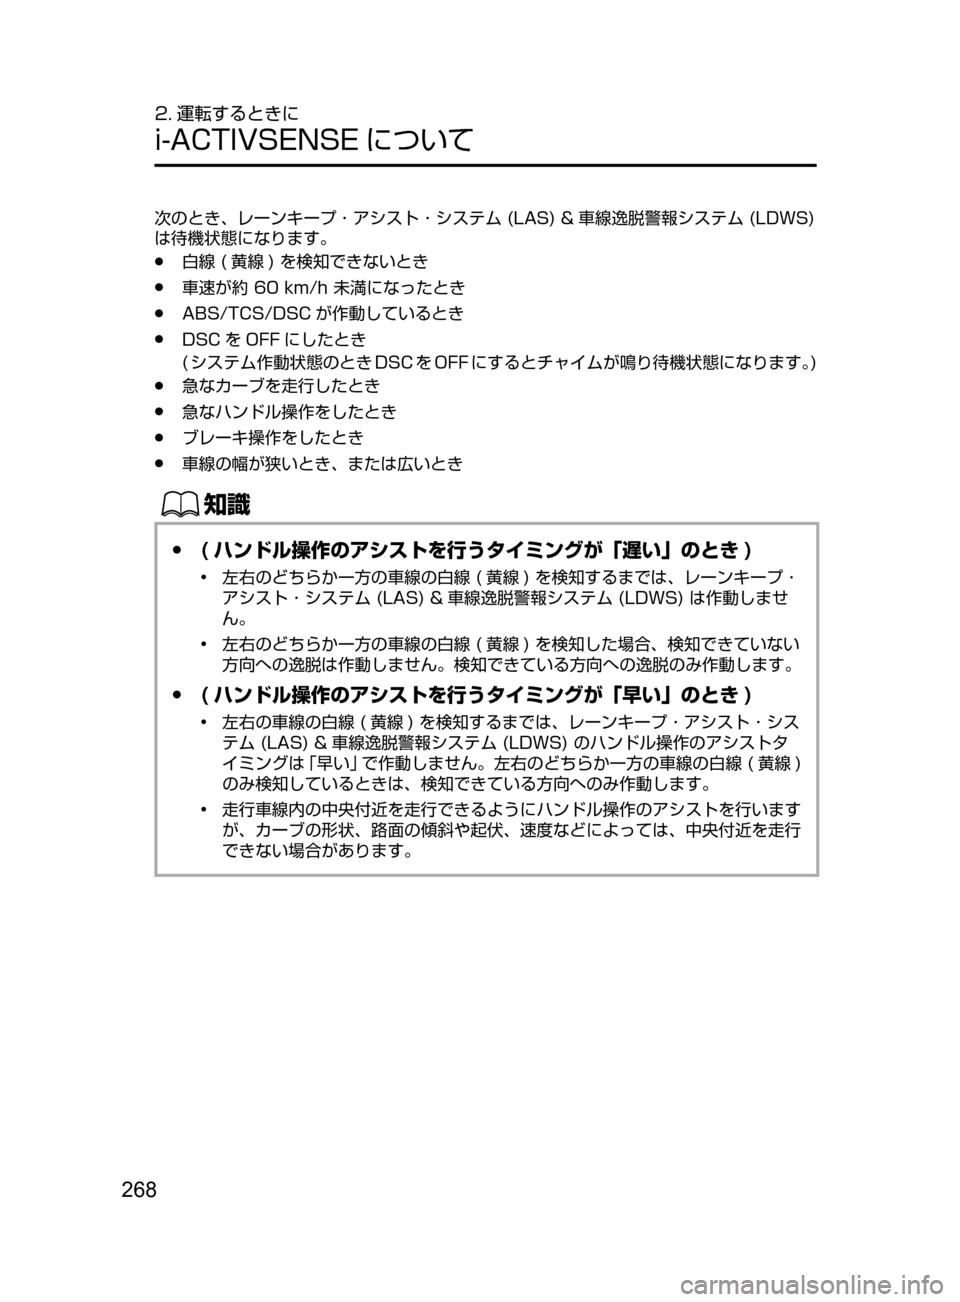 MAZDA MODEL ATENZA 2016  アテンザ｜取扱説明書 (in Japanese) 268
2. 運転するときに
i-ACTIVSENSE について
次のとき､ レーンキープ ･ アシスト ･ システム﻿﻿(LAS)﻿﻿& 車線逸脱警報システム﻿﻿(LDWS)﻿﻿
は待機